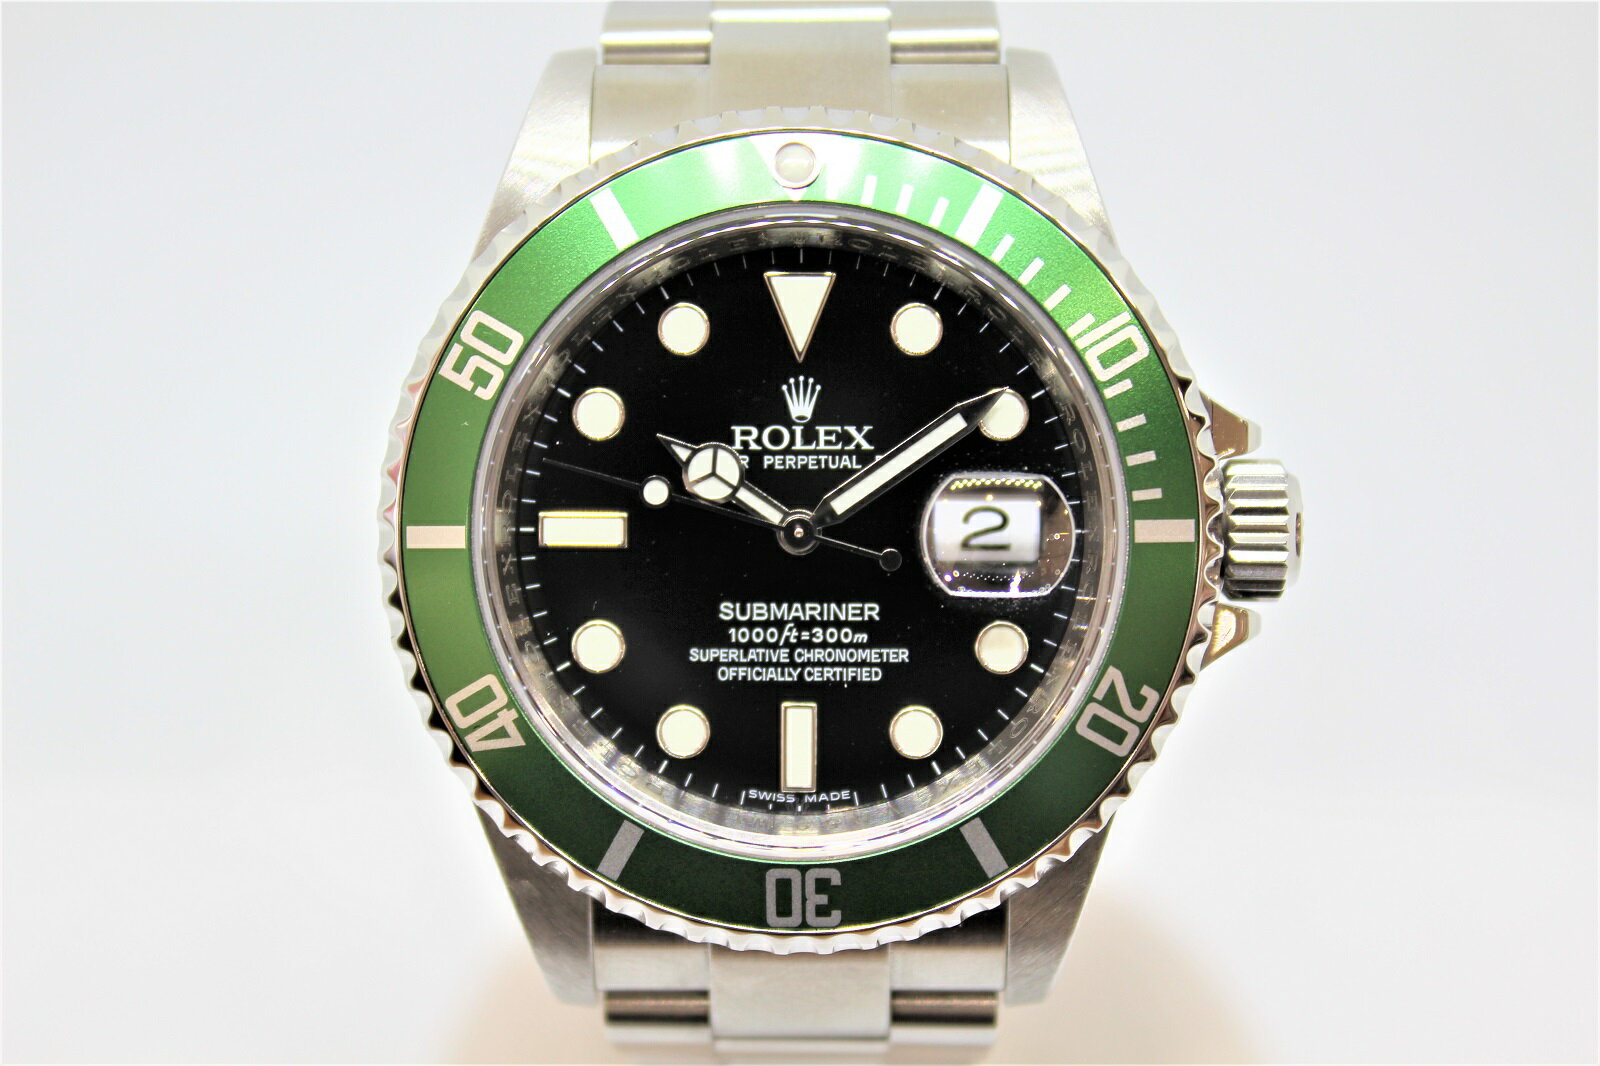 ROLEX　ロレックス　サブマリーナー　16610LV　V番　緑ベゼル　ブラック　SS　メンズ　腕時計【中古】